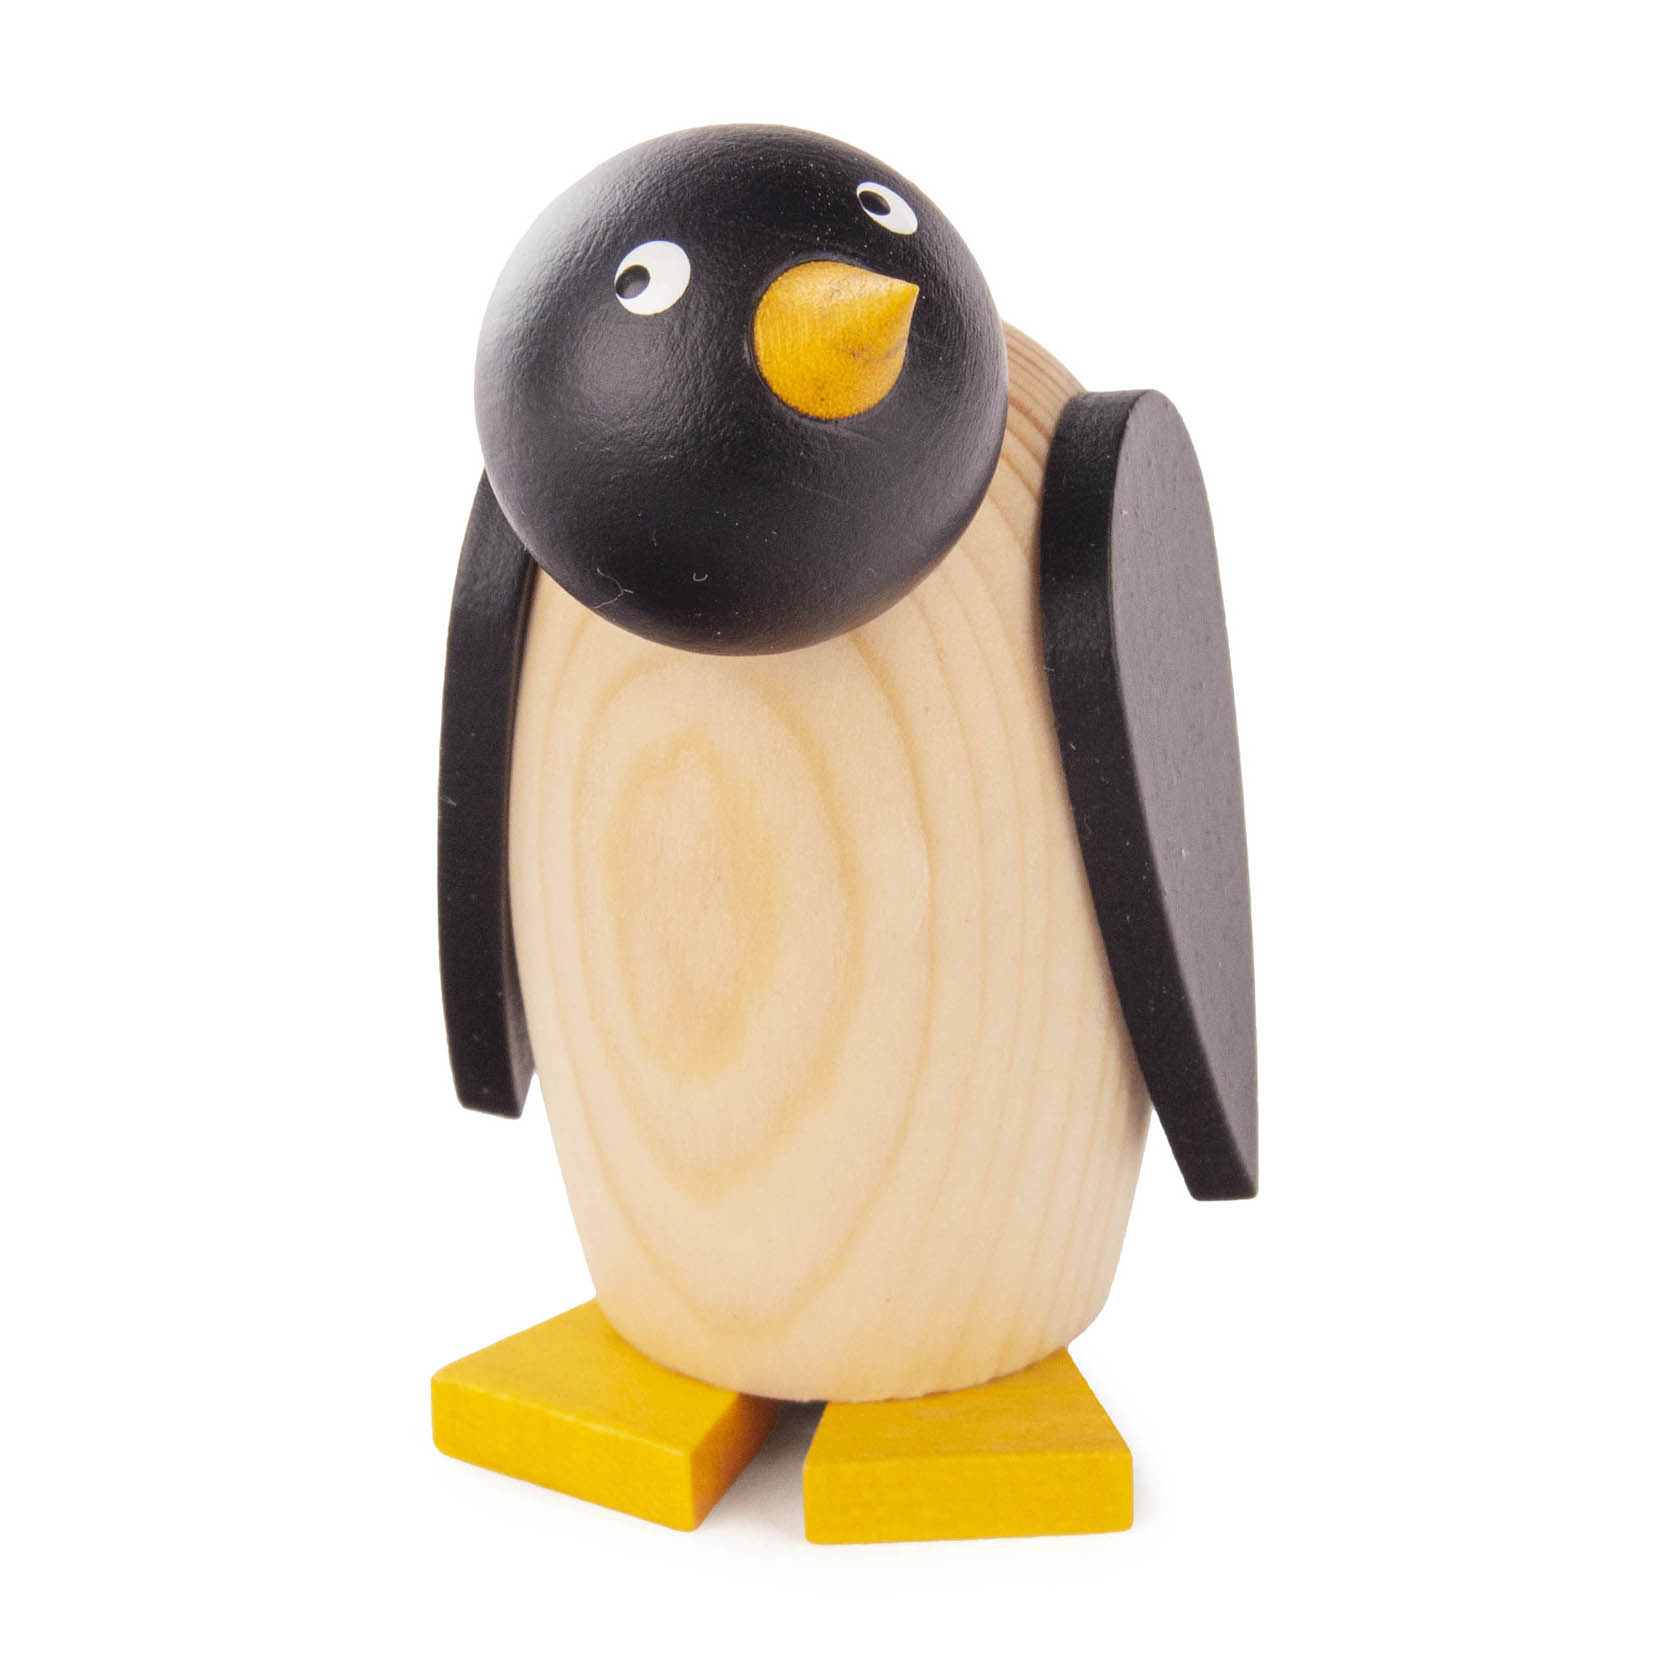 Pinguin klein 7,5cm im Dregeno Online Shop günstig kaufen